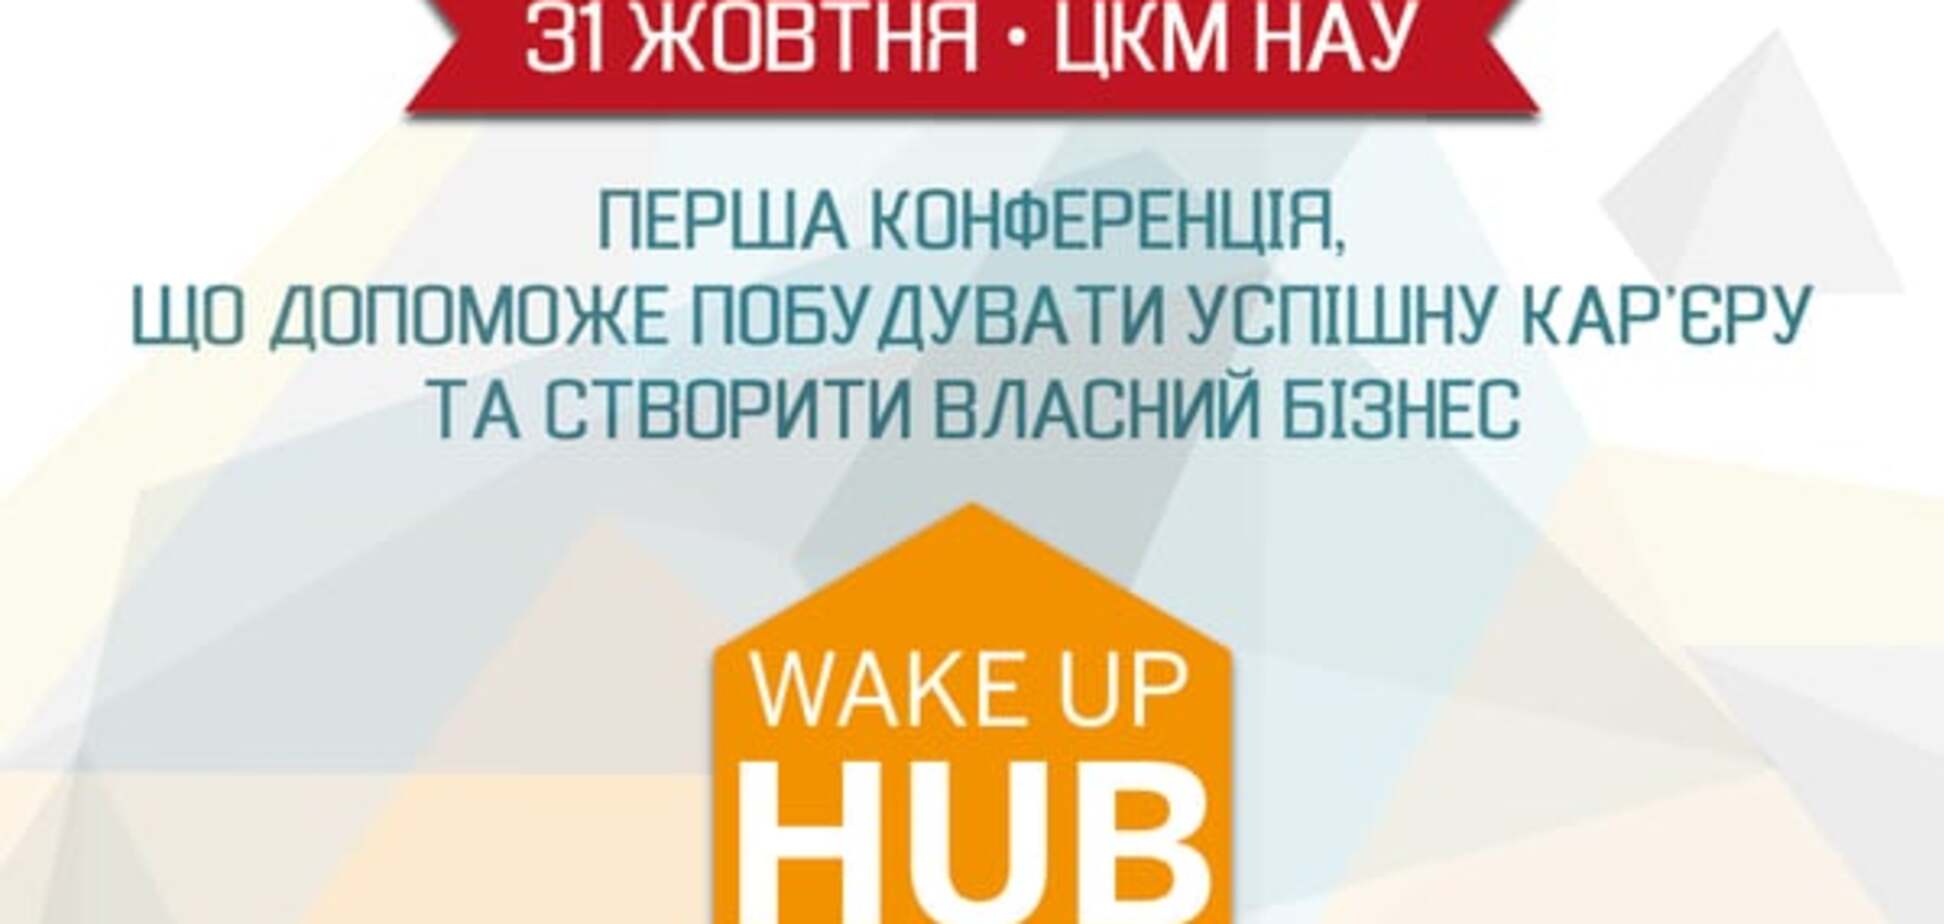 Wake Up Hub 2015 - Перша конференція, що допоможе побудувати успішну кар’єру  та створити власний бізнес